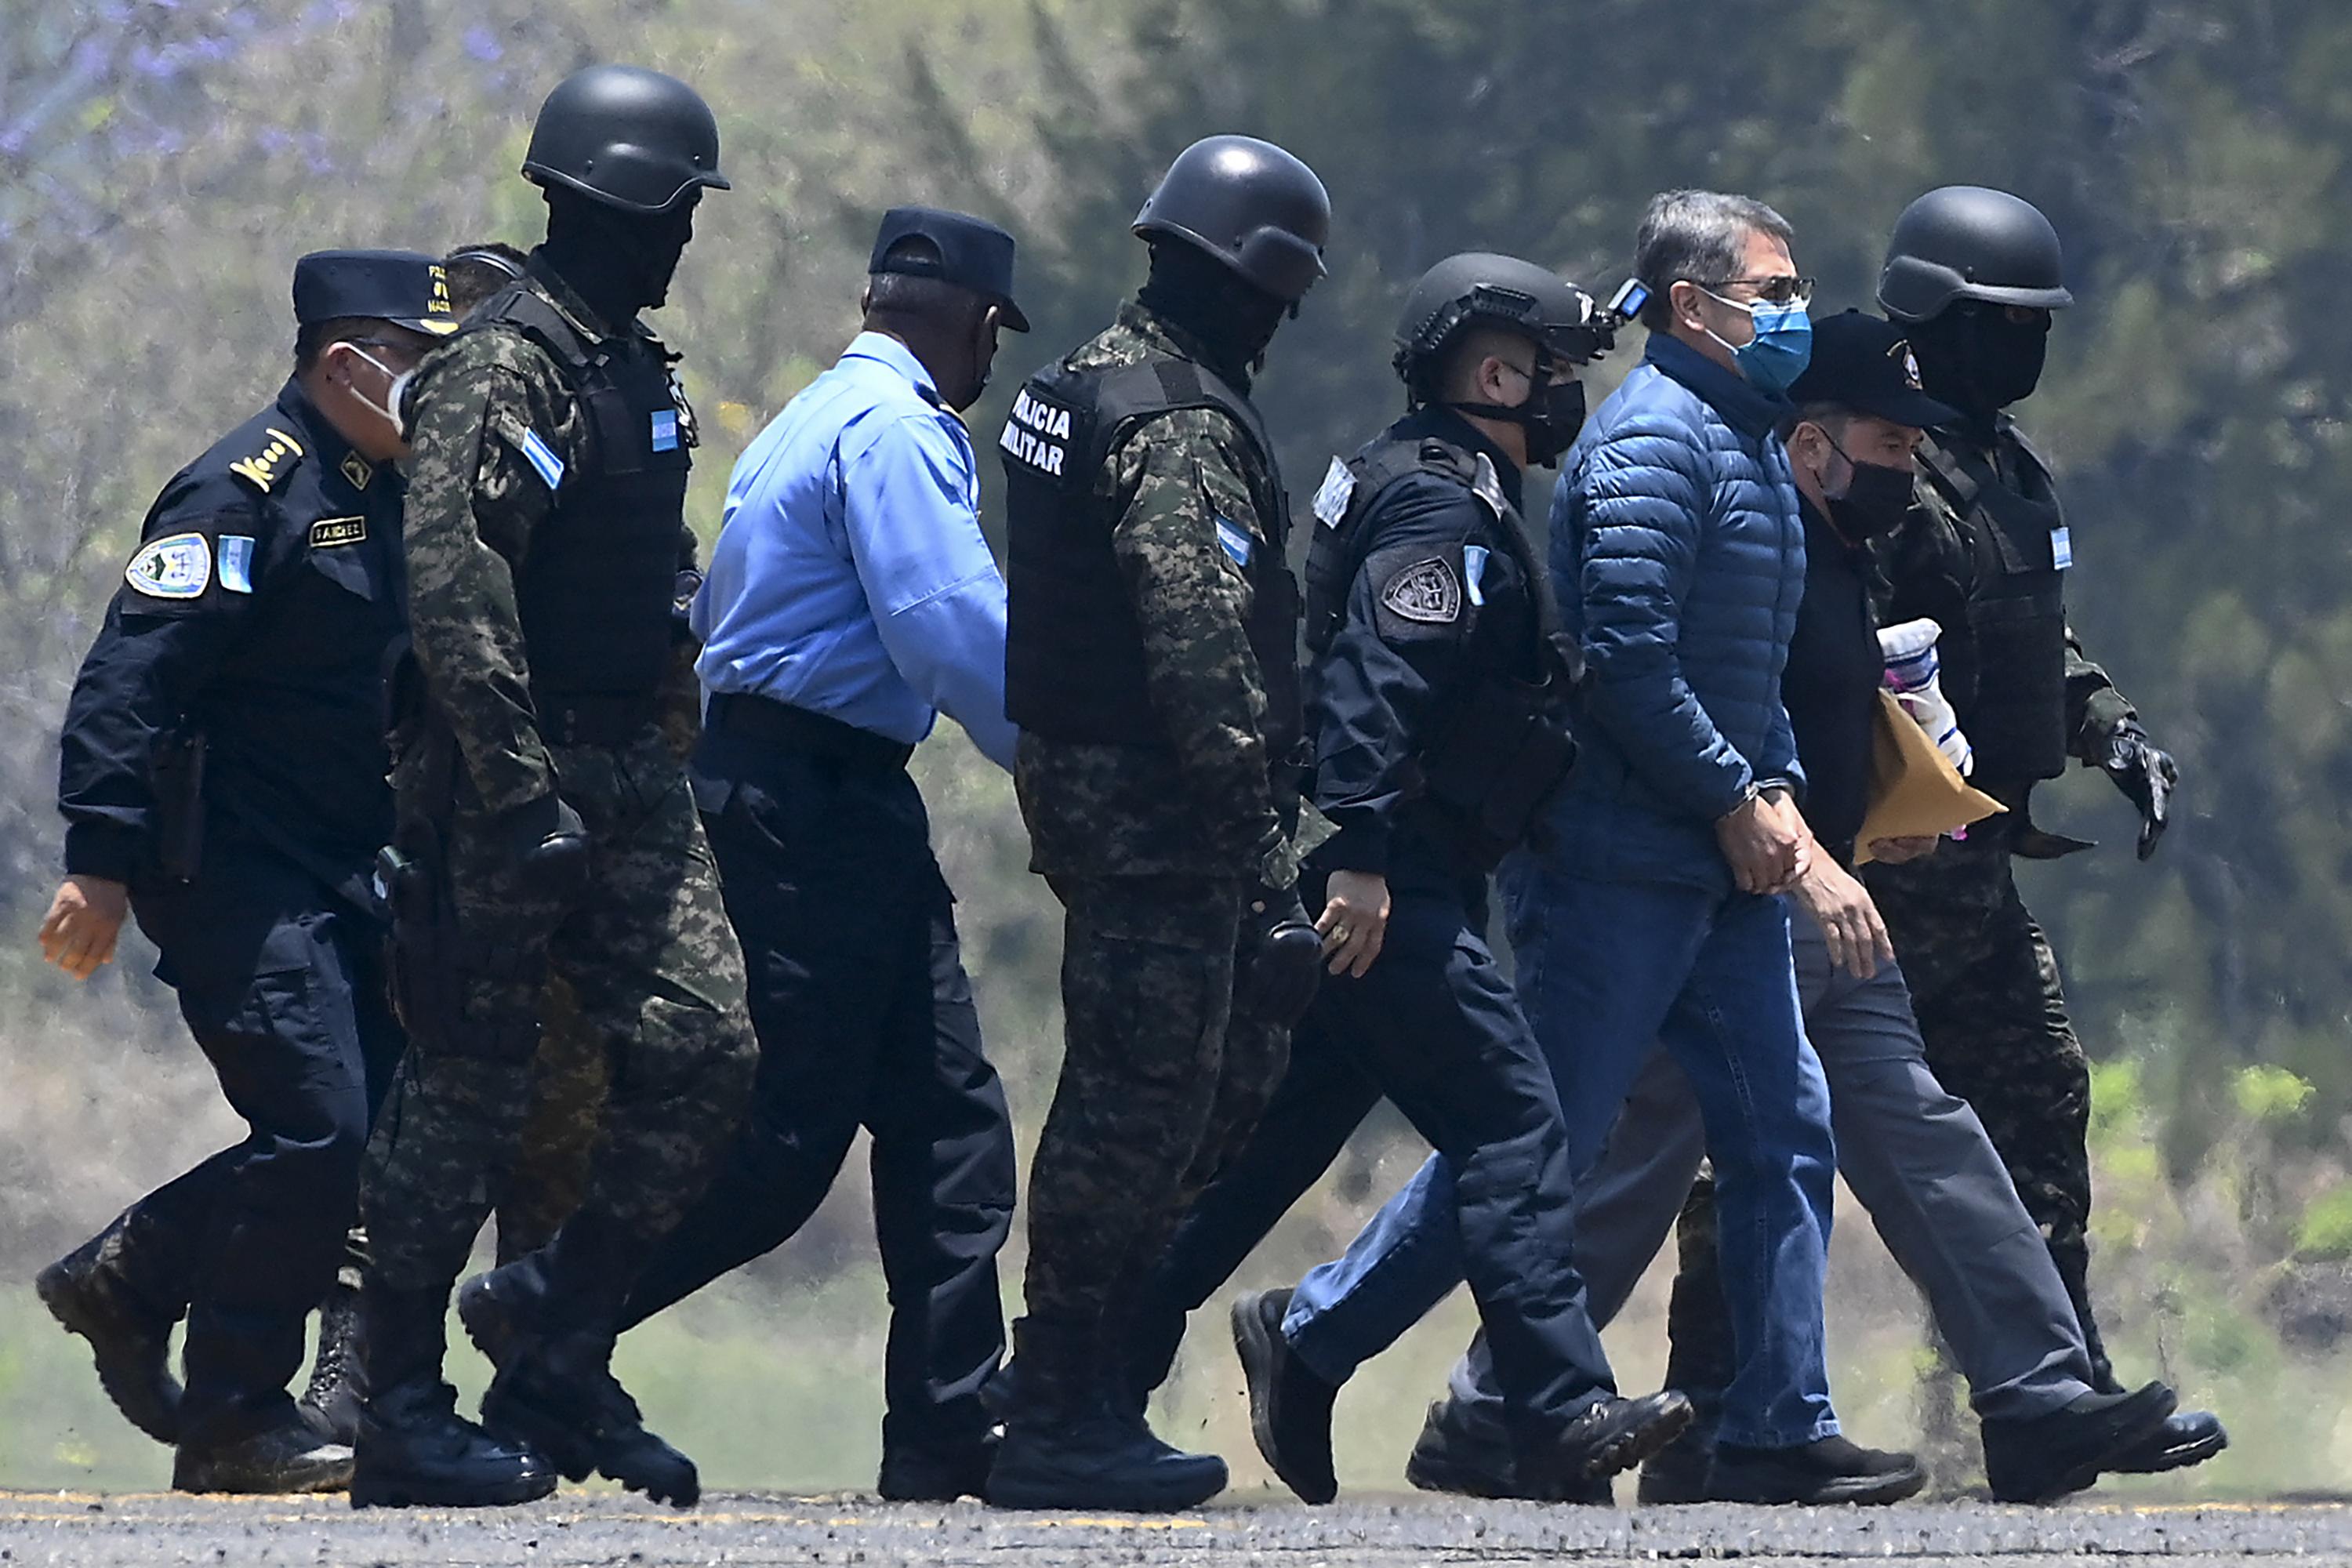 Juan Orlando Hernández, escoltado por agentes policiales a su llegada a una base de la Fuerza Aérea en Tegucigalpa el 21 de abril de 2022, el día que fue extraditado a Estados Unidos para enfrentar cargos relacionados con el narcotráfico. Foto de El Faro: Orlando Sierra/ AFP.